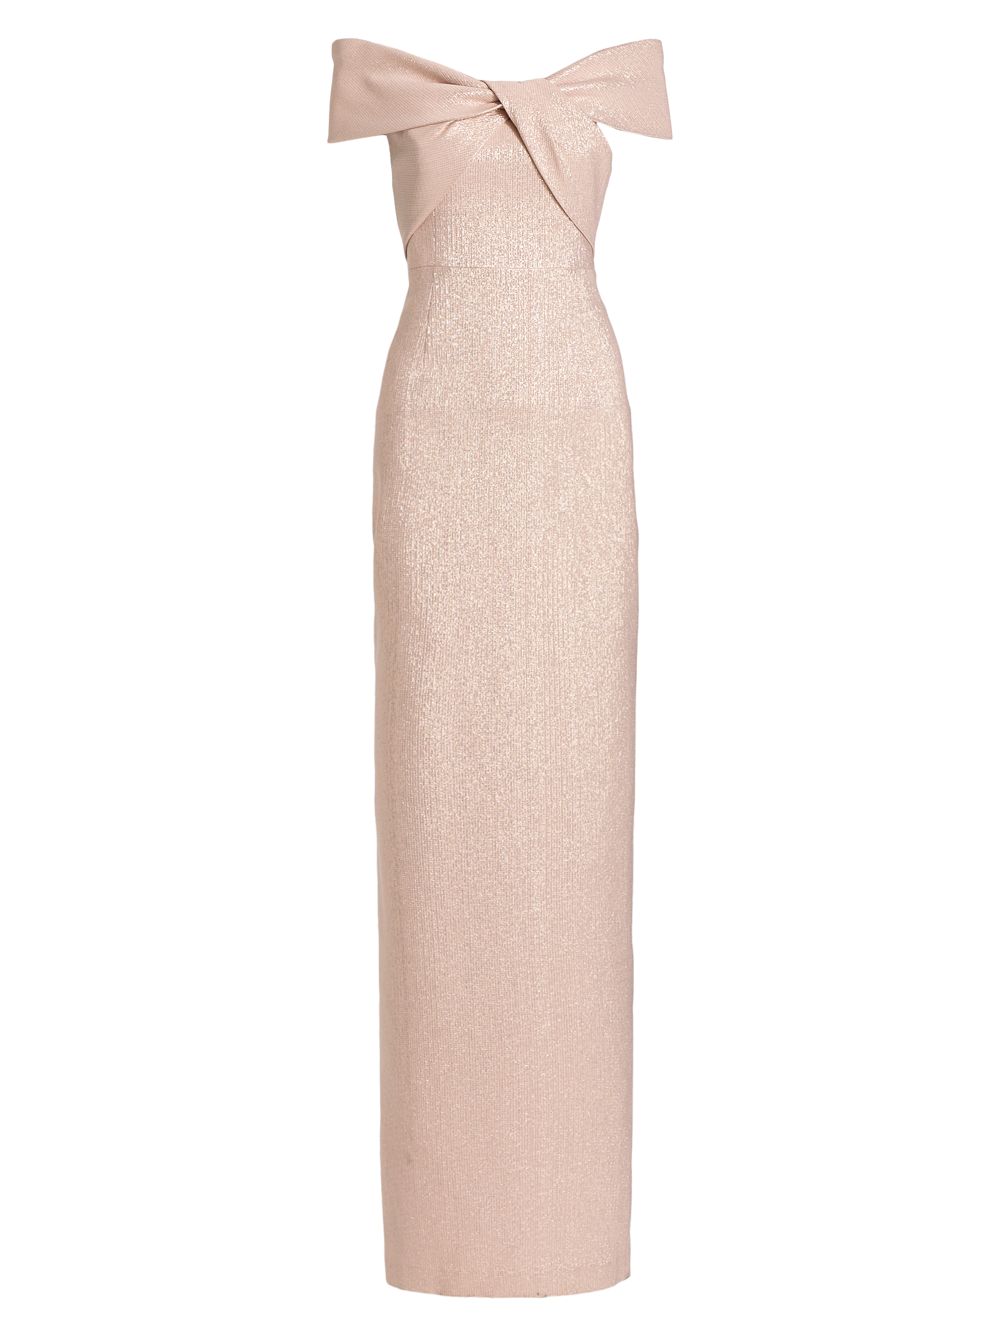 Металлическое платье с открытыми плечами Teri Jon by Rickie Freeman, розовый